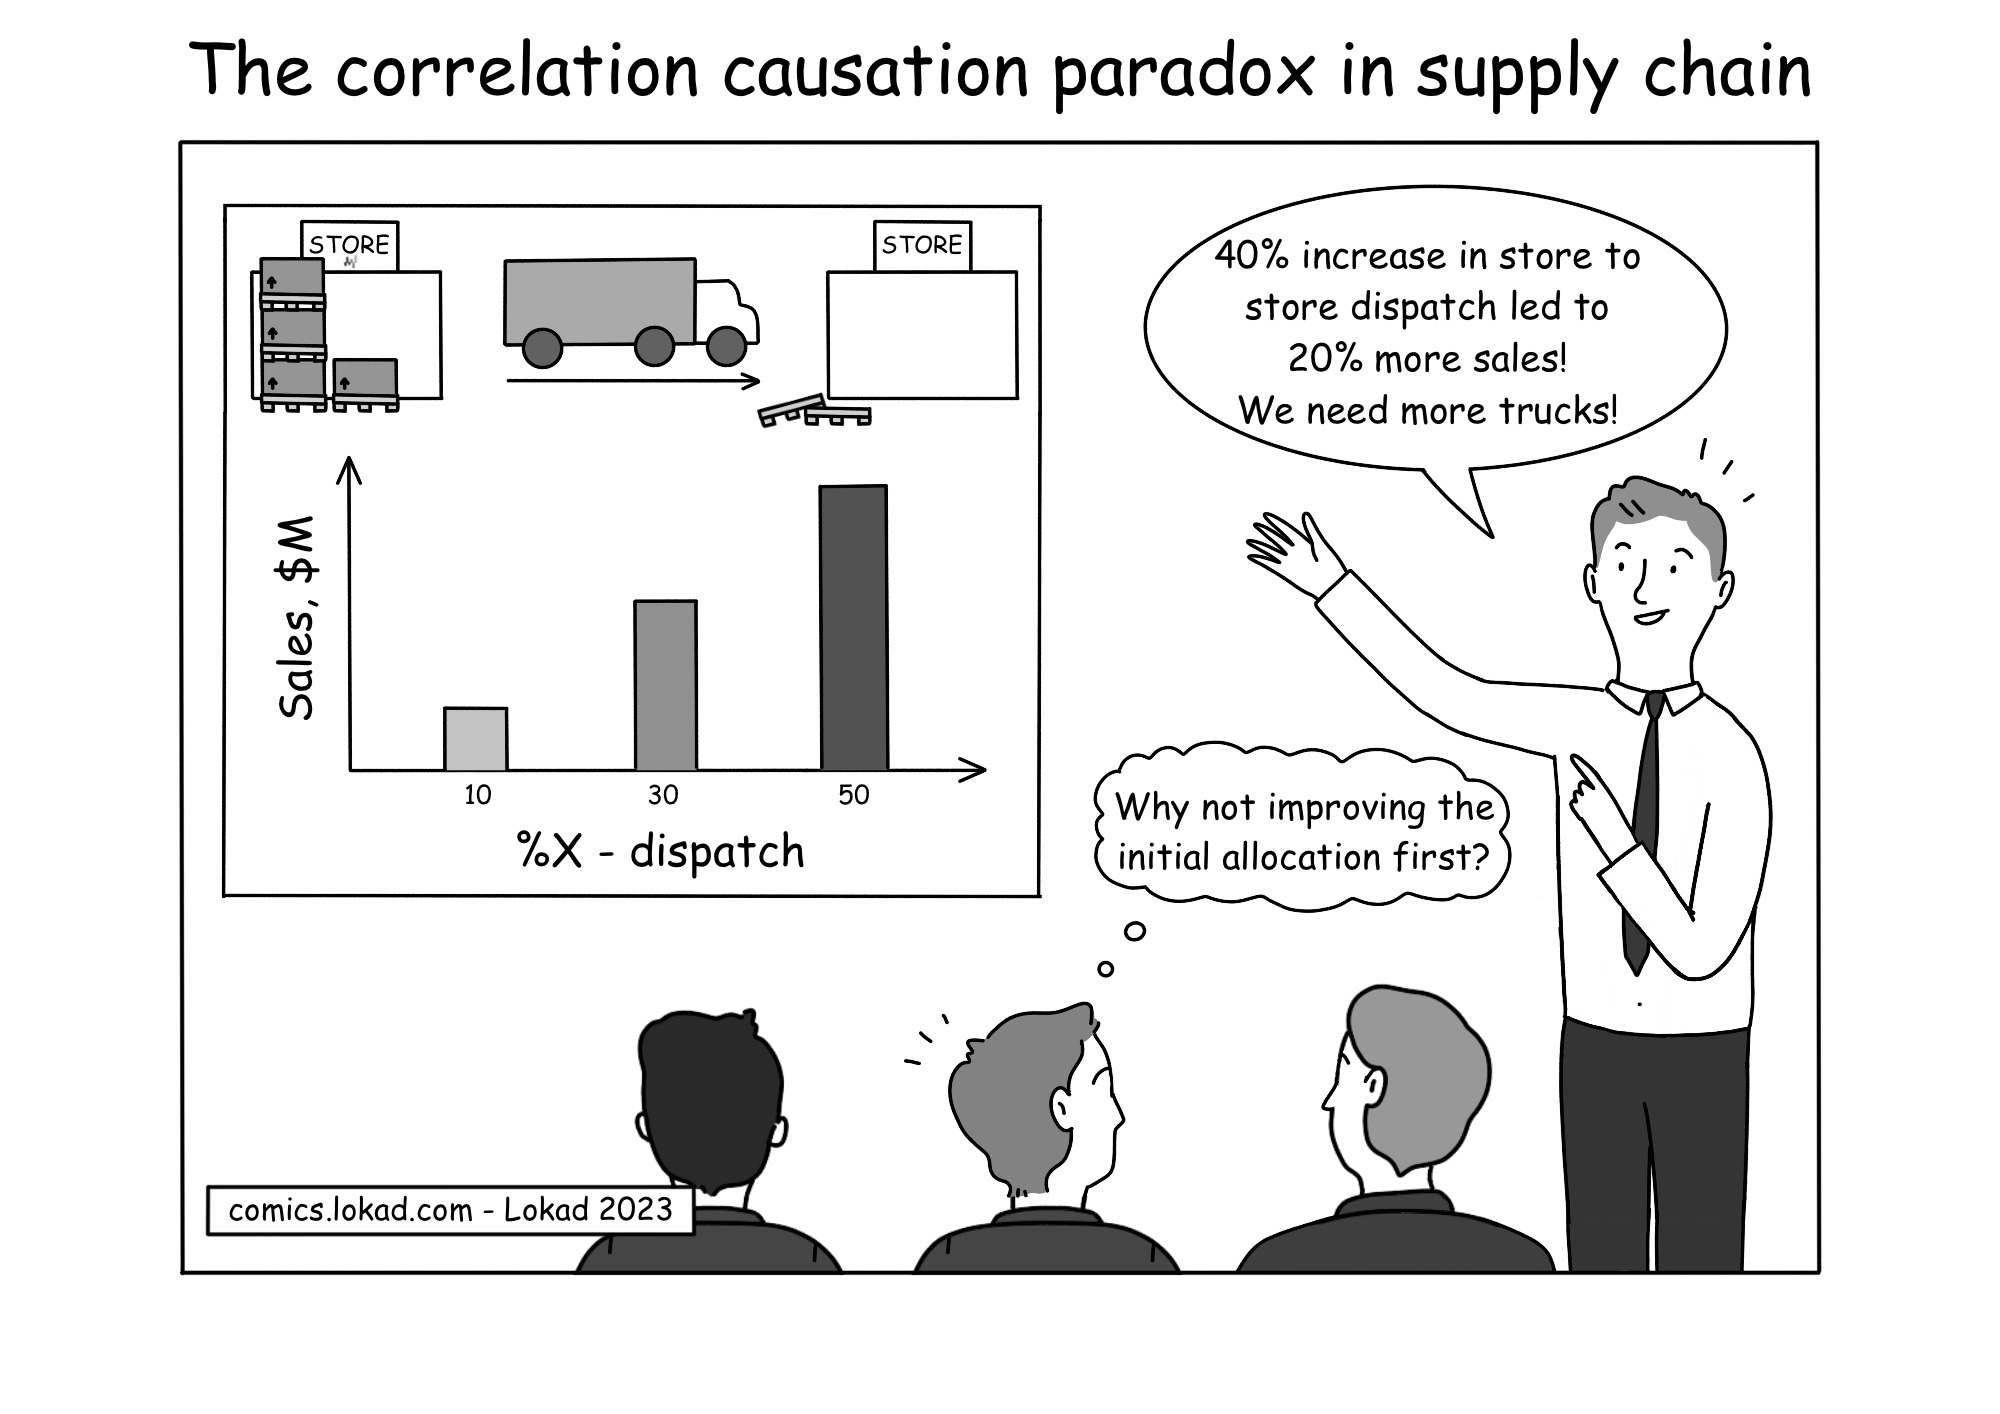 Le paradoxe de la corrélation et de la causalité dans la supply chain